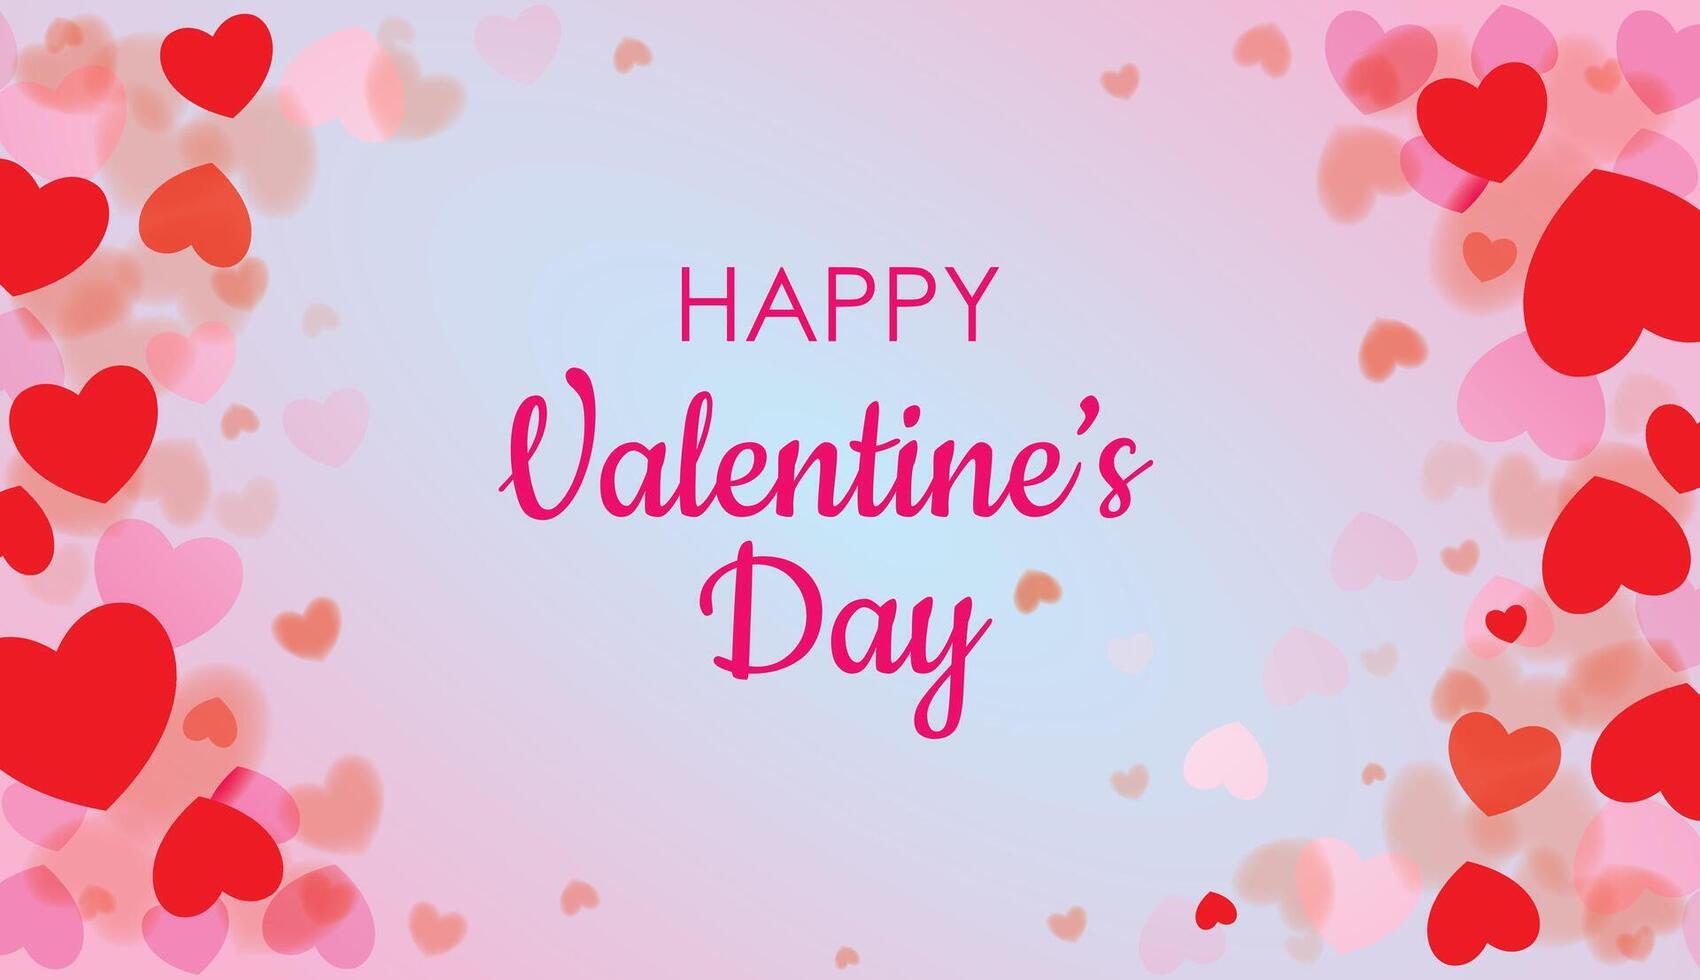 Lycklig valentines dag, kärlek dag hjärtan romantisk firande design. vektor illustration